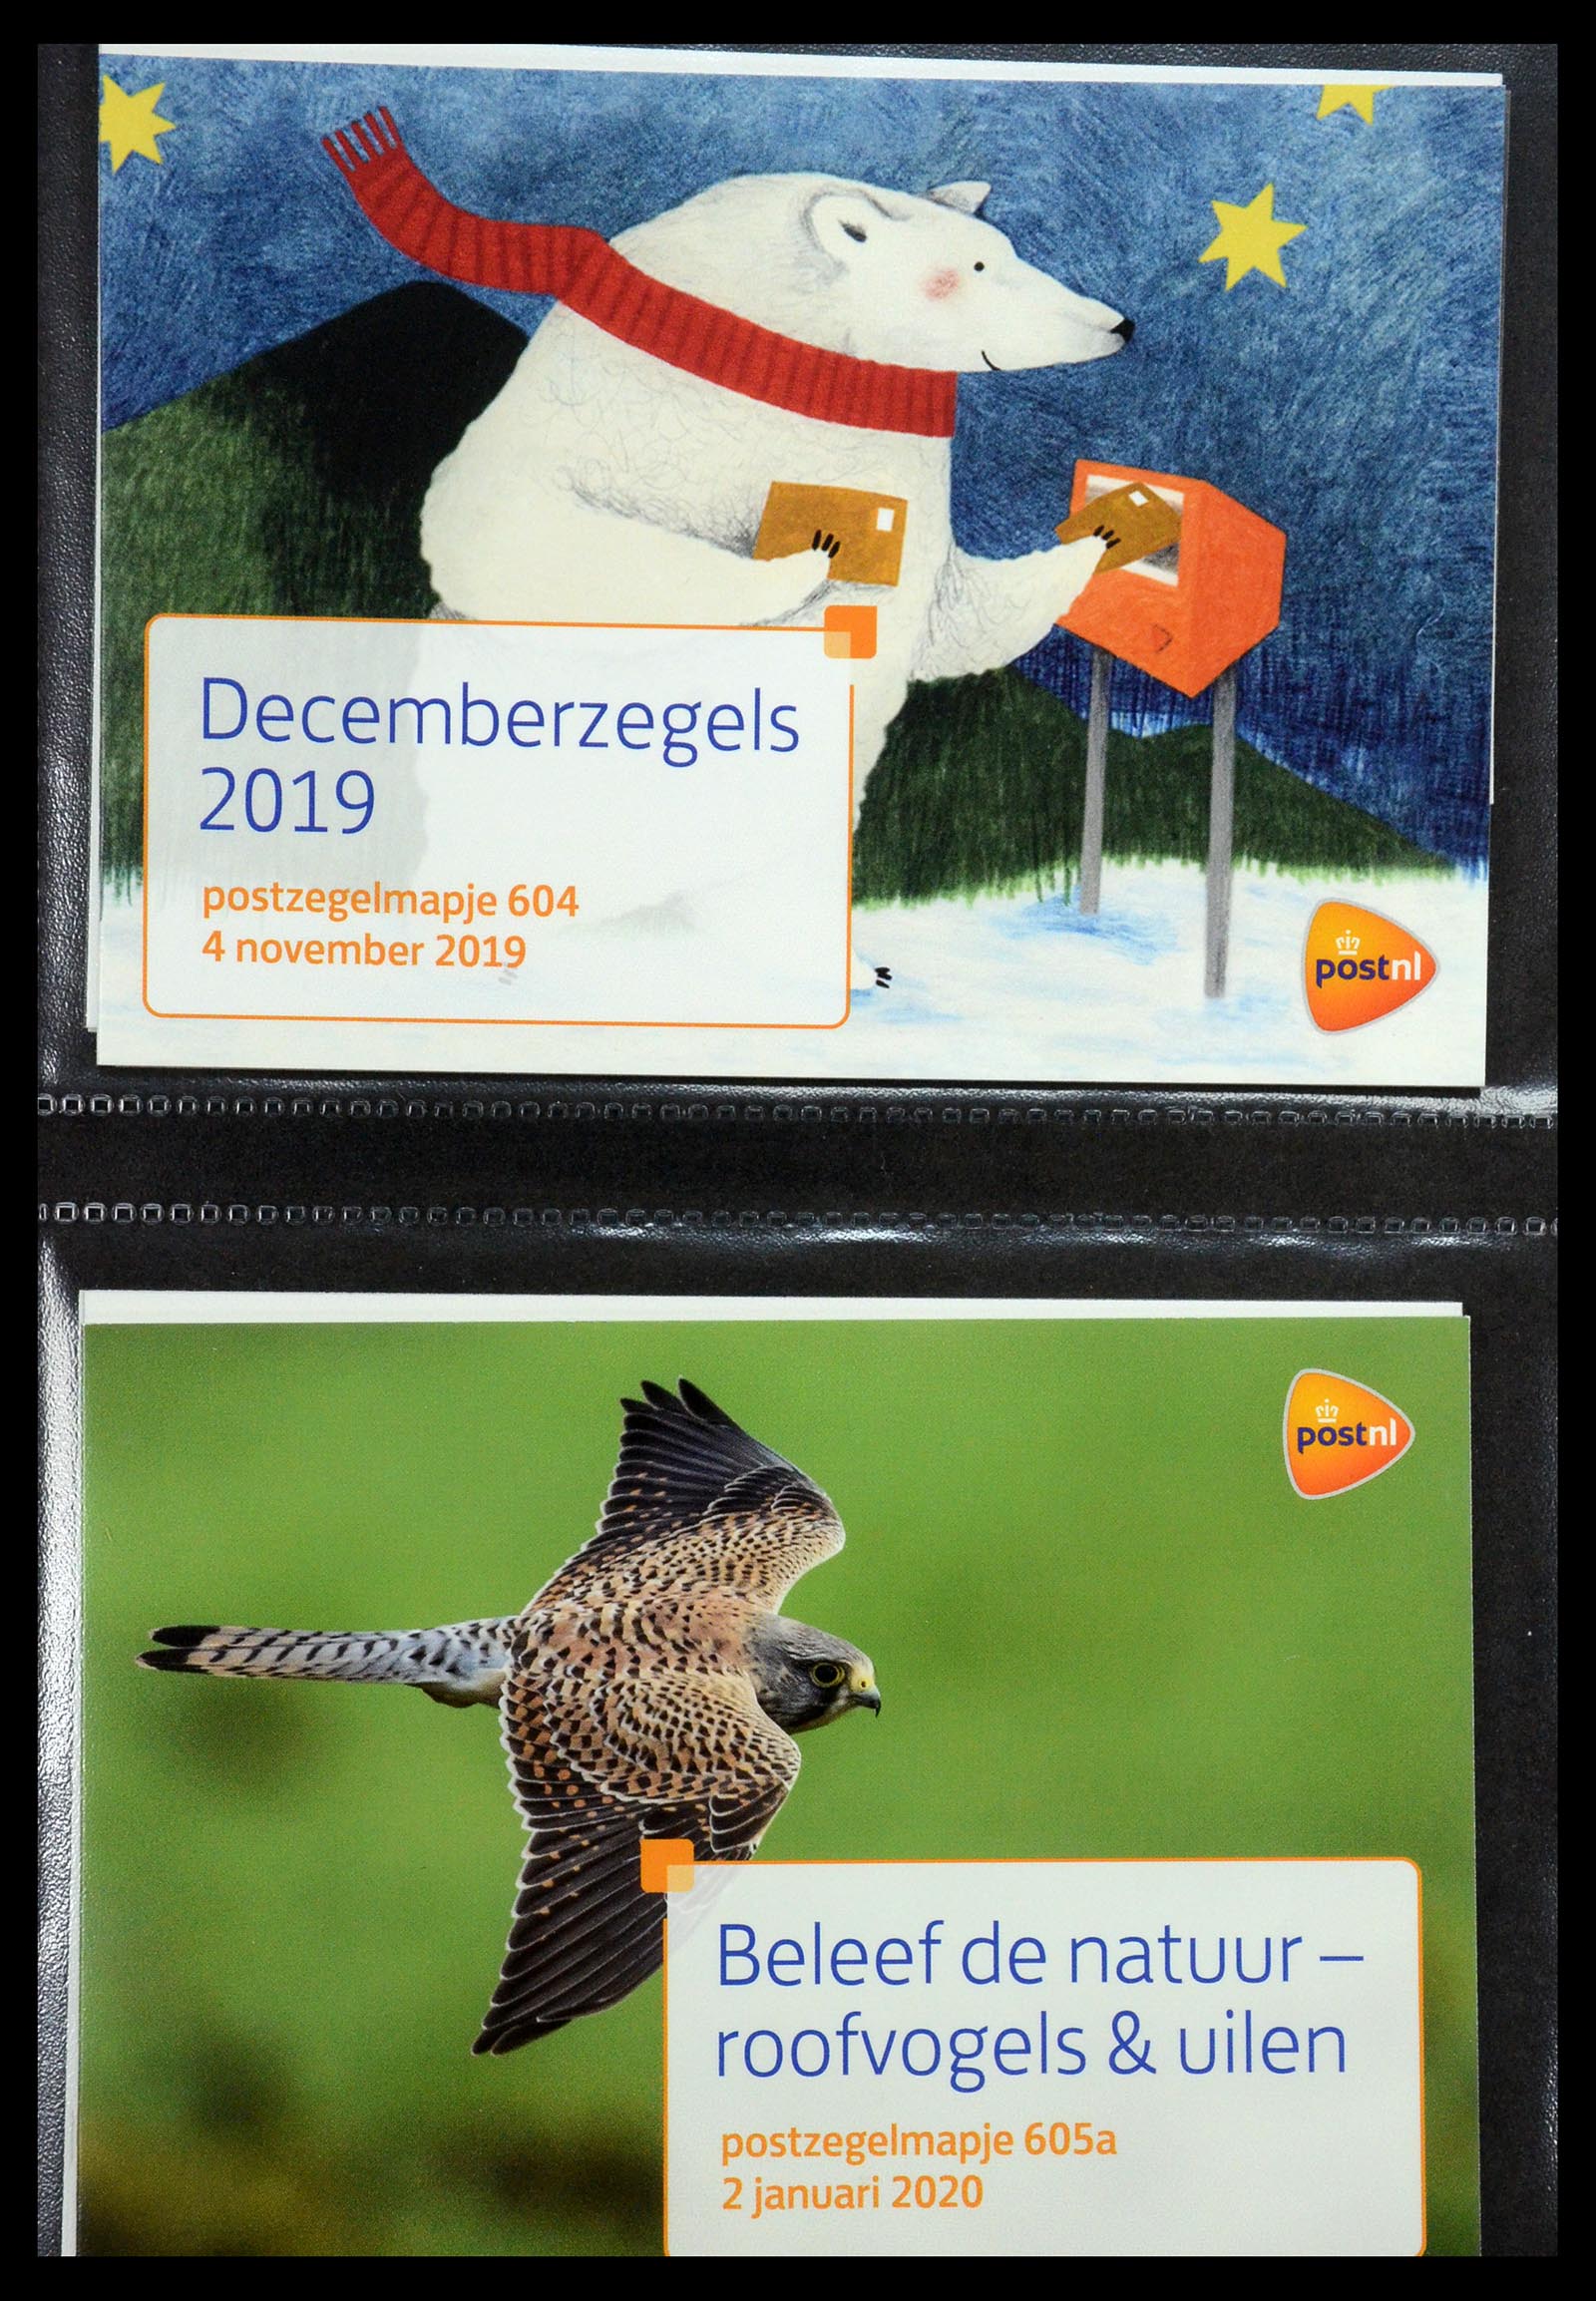 35144 366 - Stamp Collection 35144 Netherlands PTT presentation packs 1982-2021!